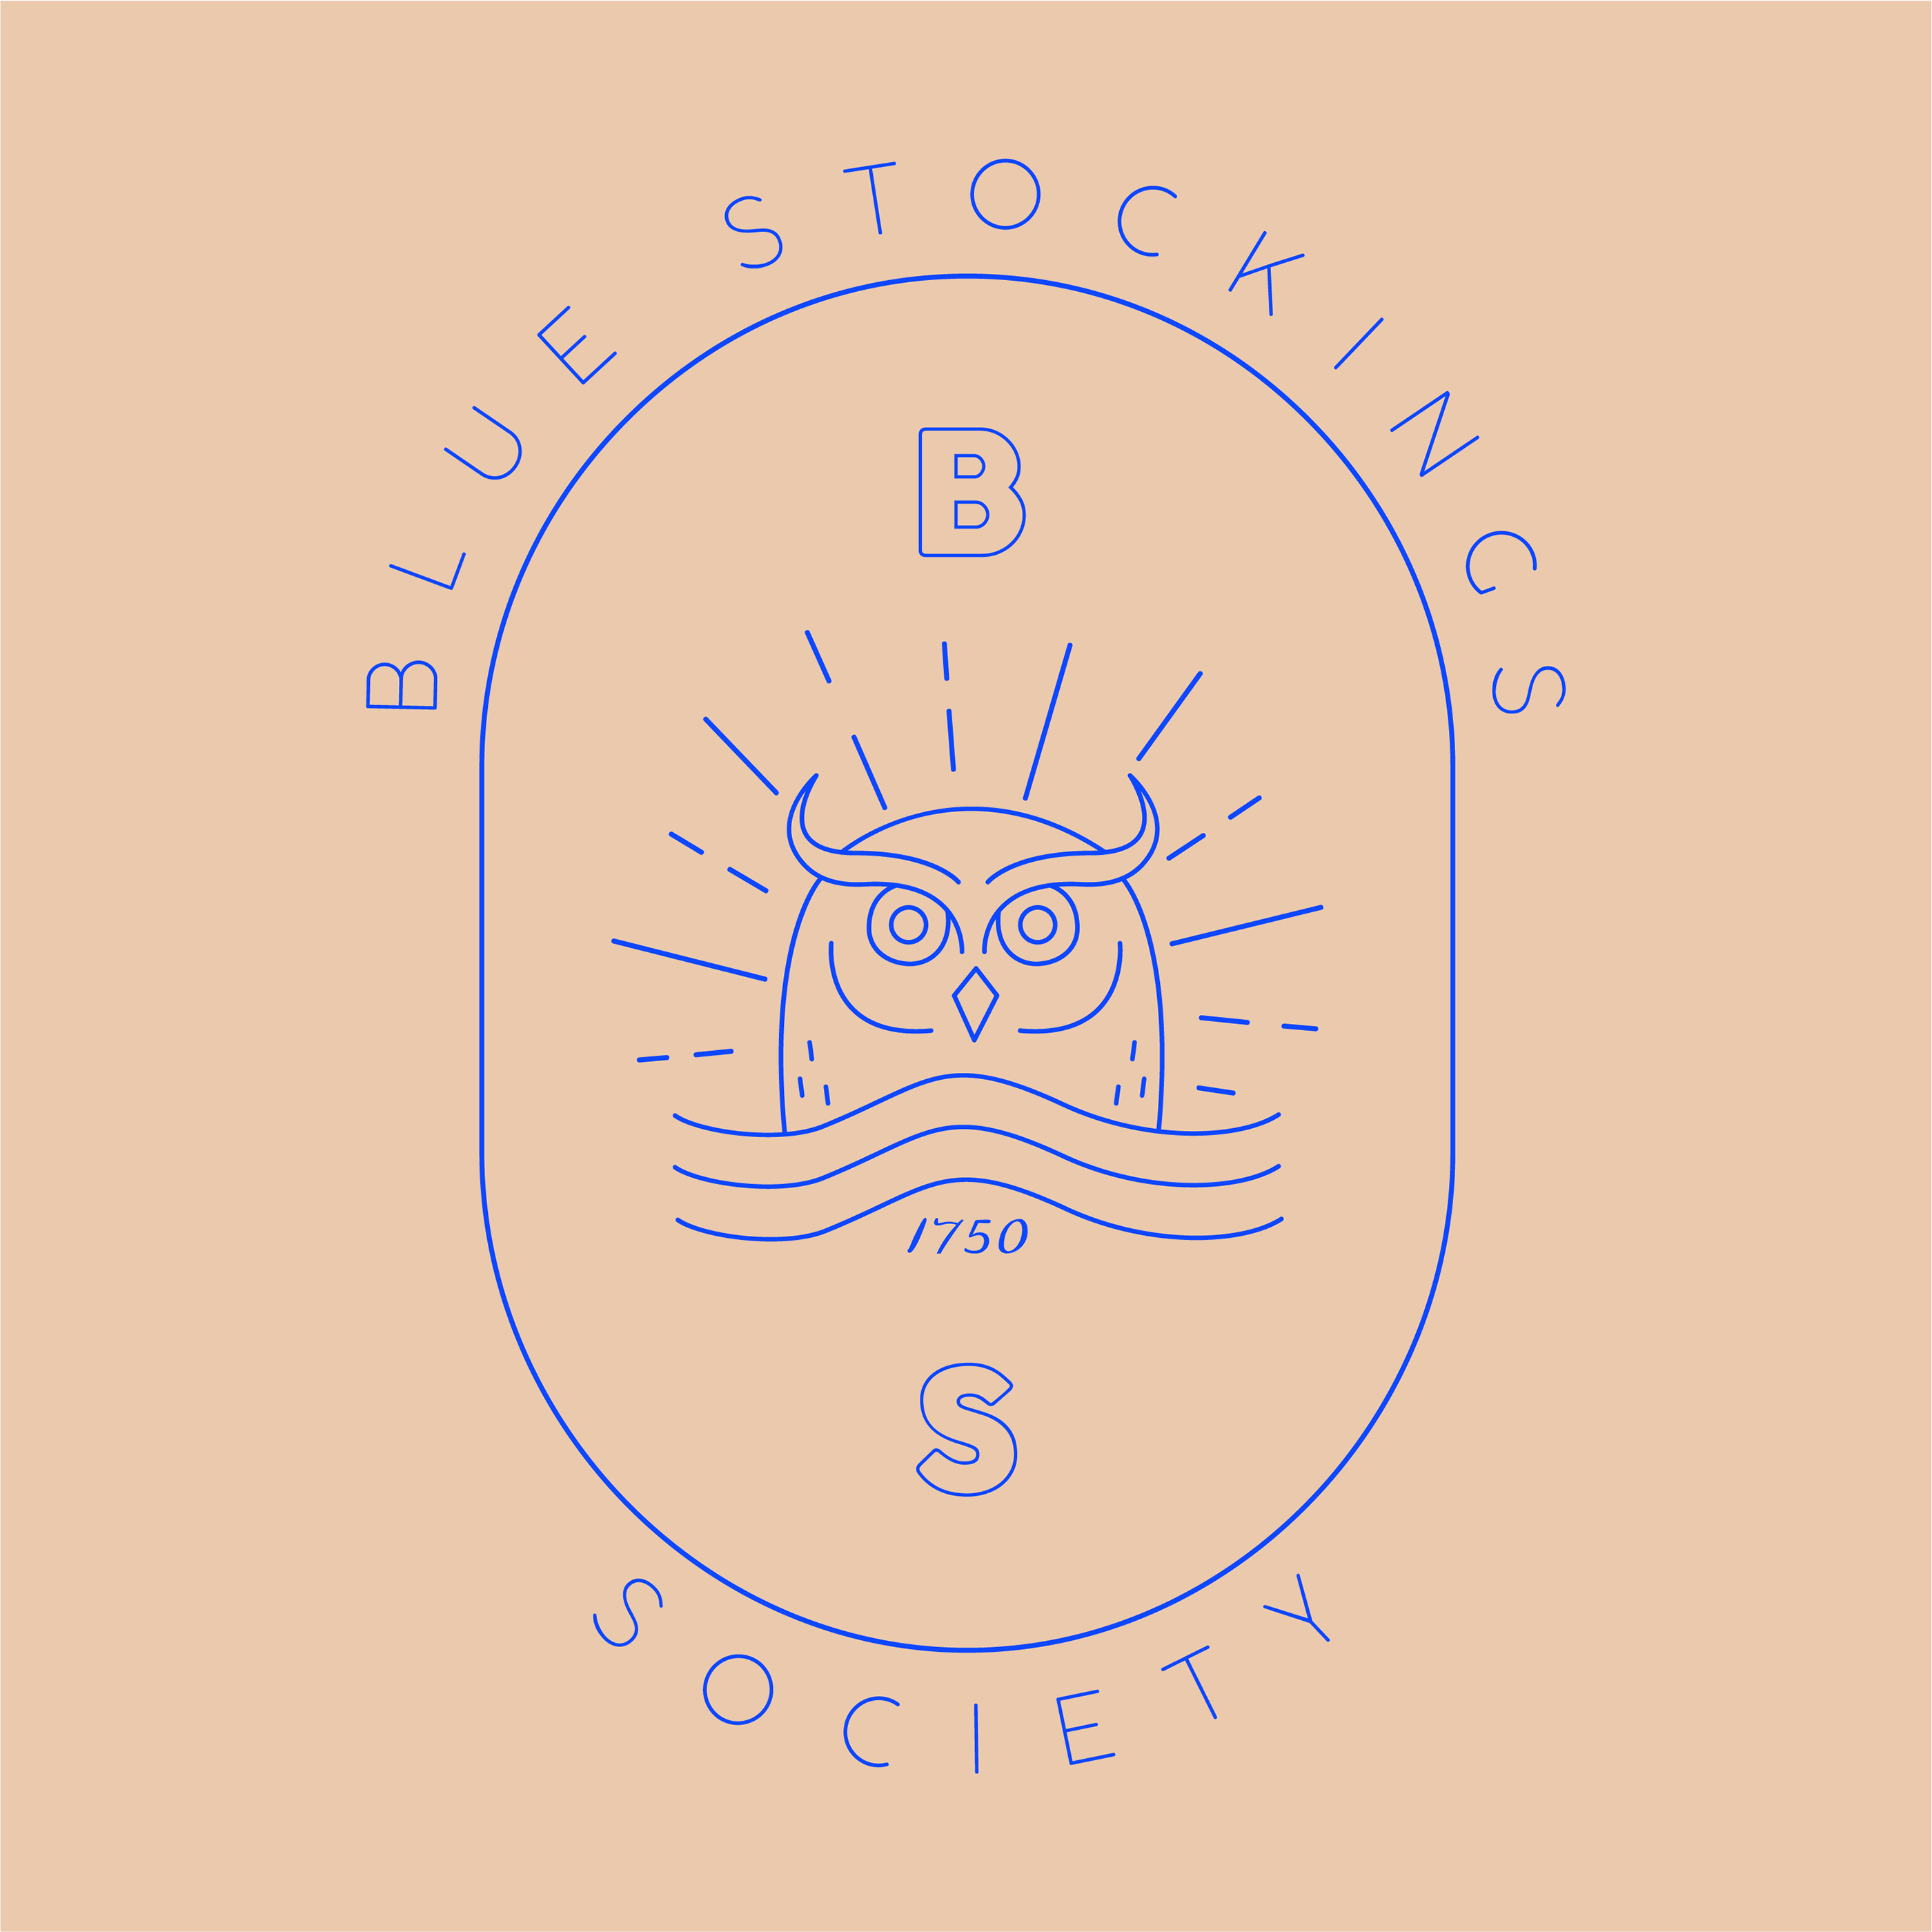 Logo Design | Blue Stockings Society on Behance